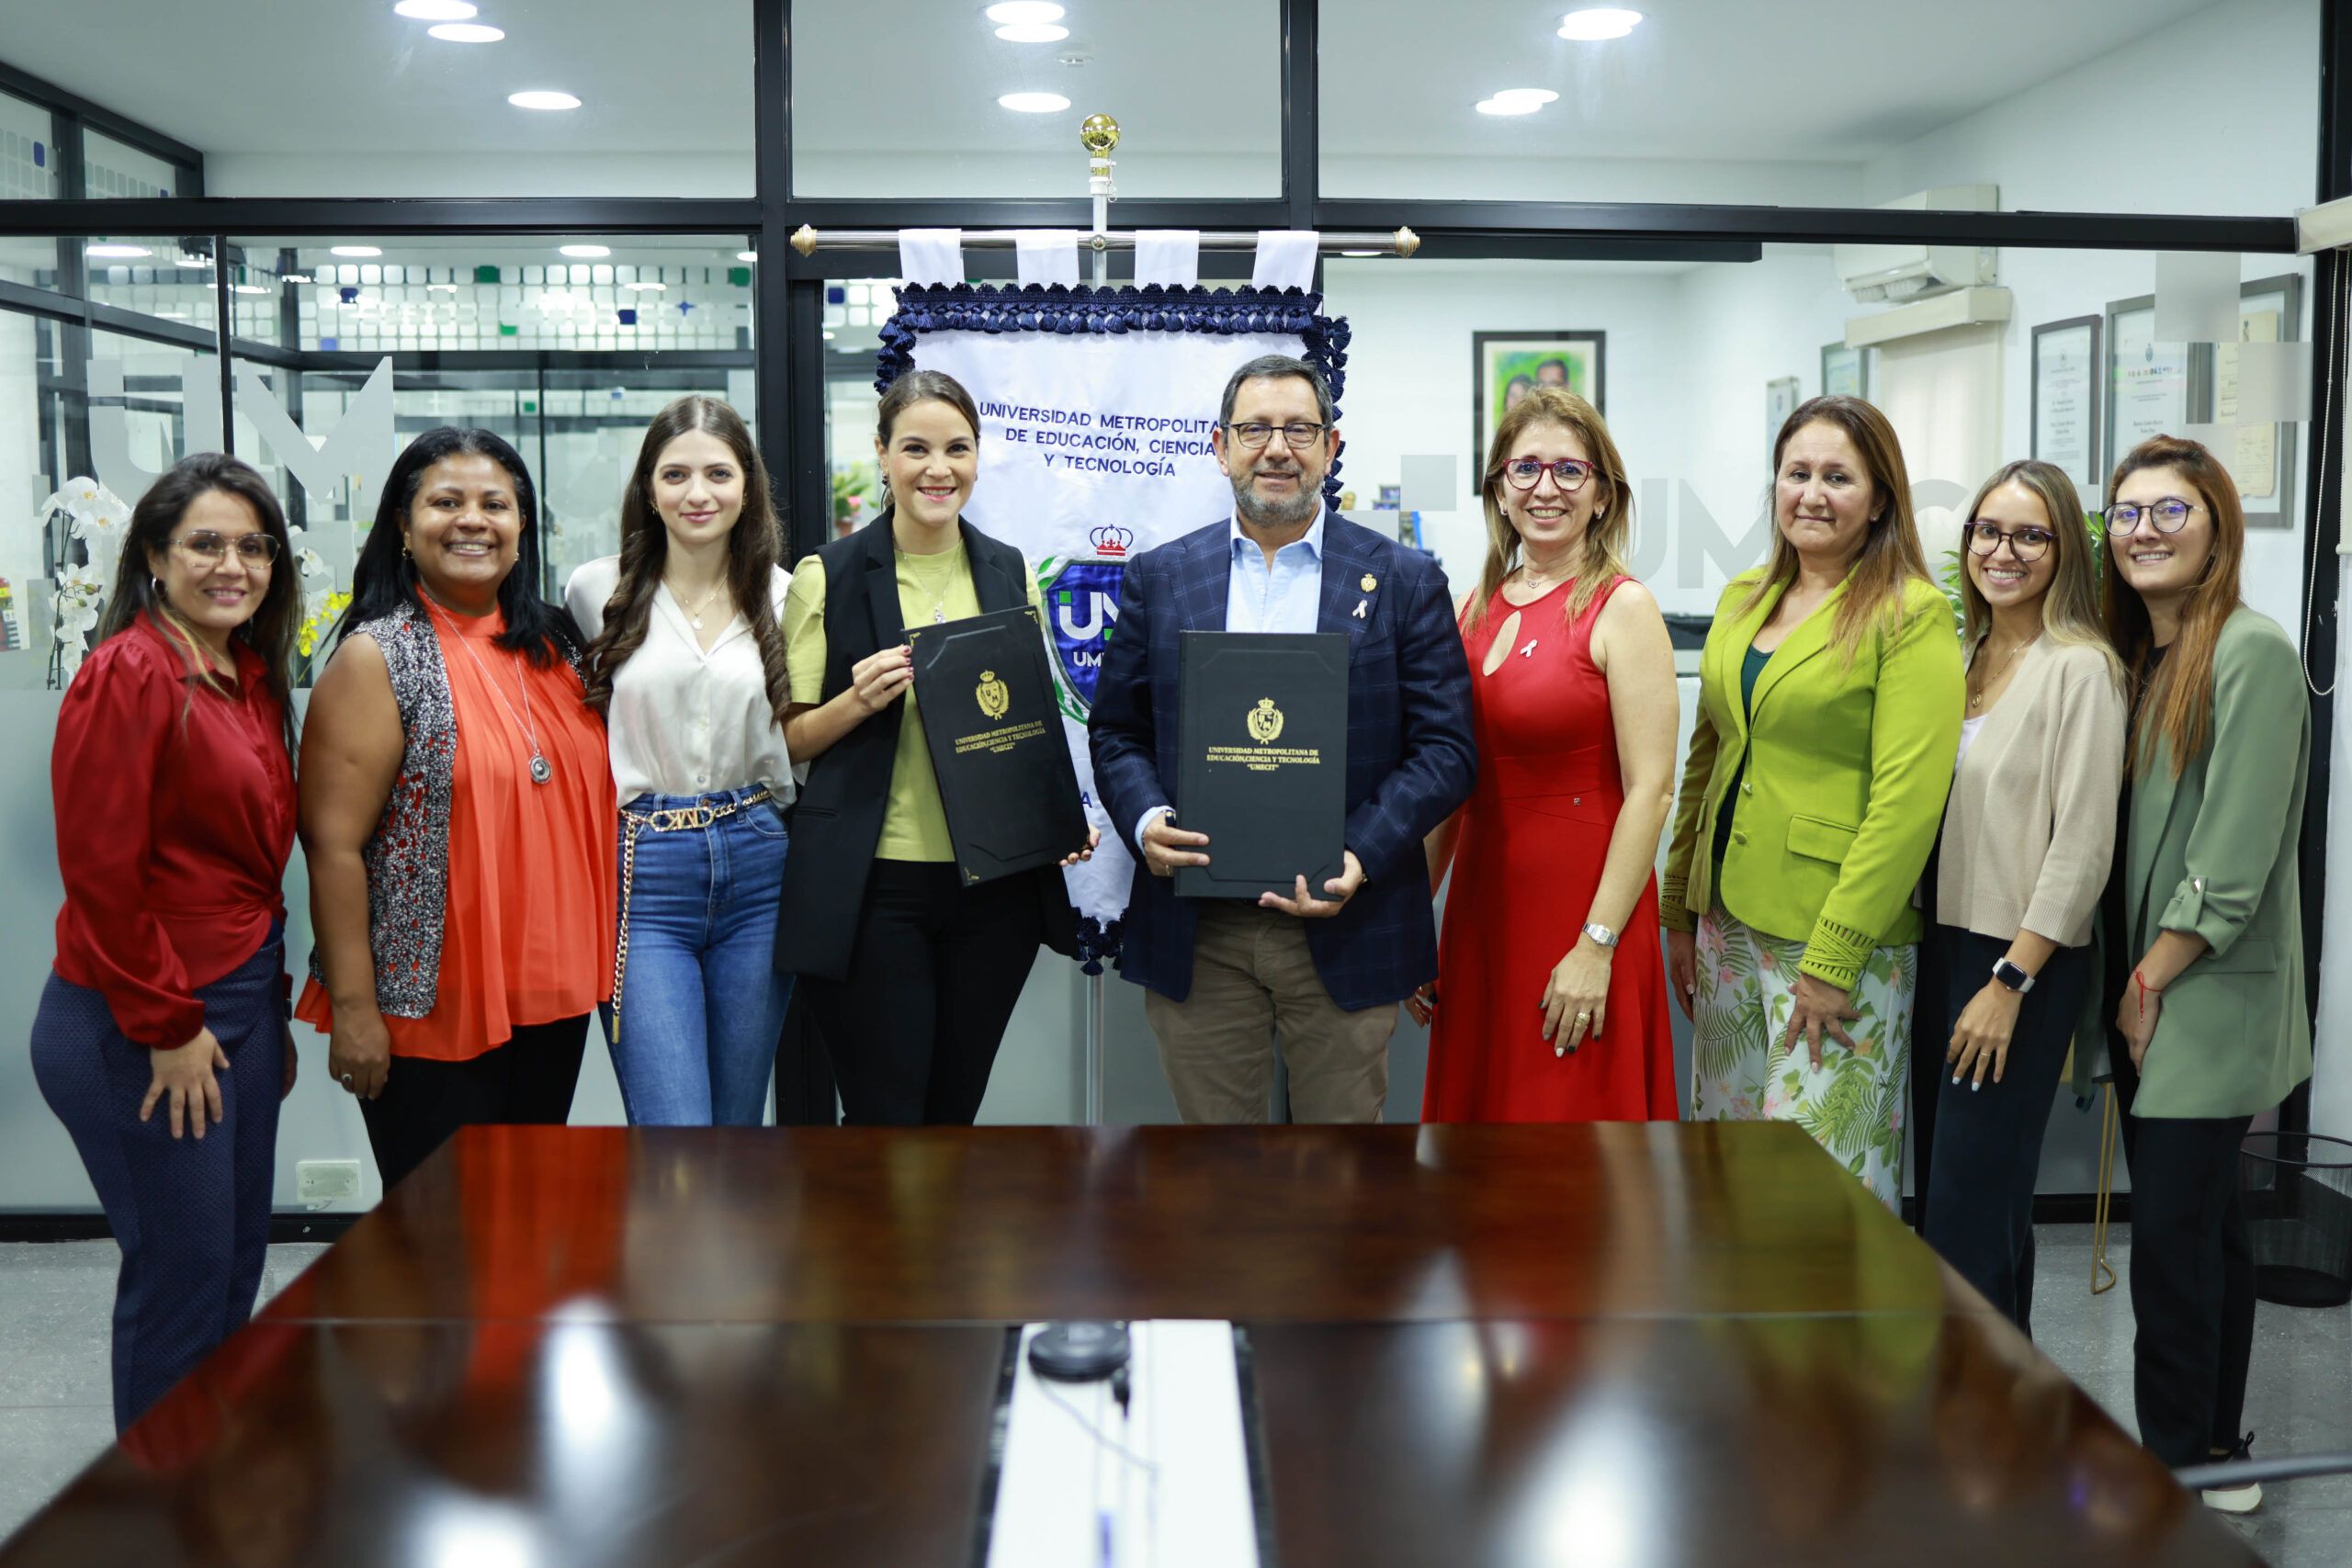 Convenio de Cooperación entre UMECIT y BANCOLOMBIA PANAMÁ S.A. y BANCOLOMBIA S.A. (sucursal PANAMÁ) de la REPÚBLICA DE PANAMÁ